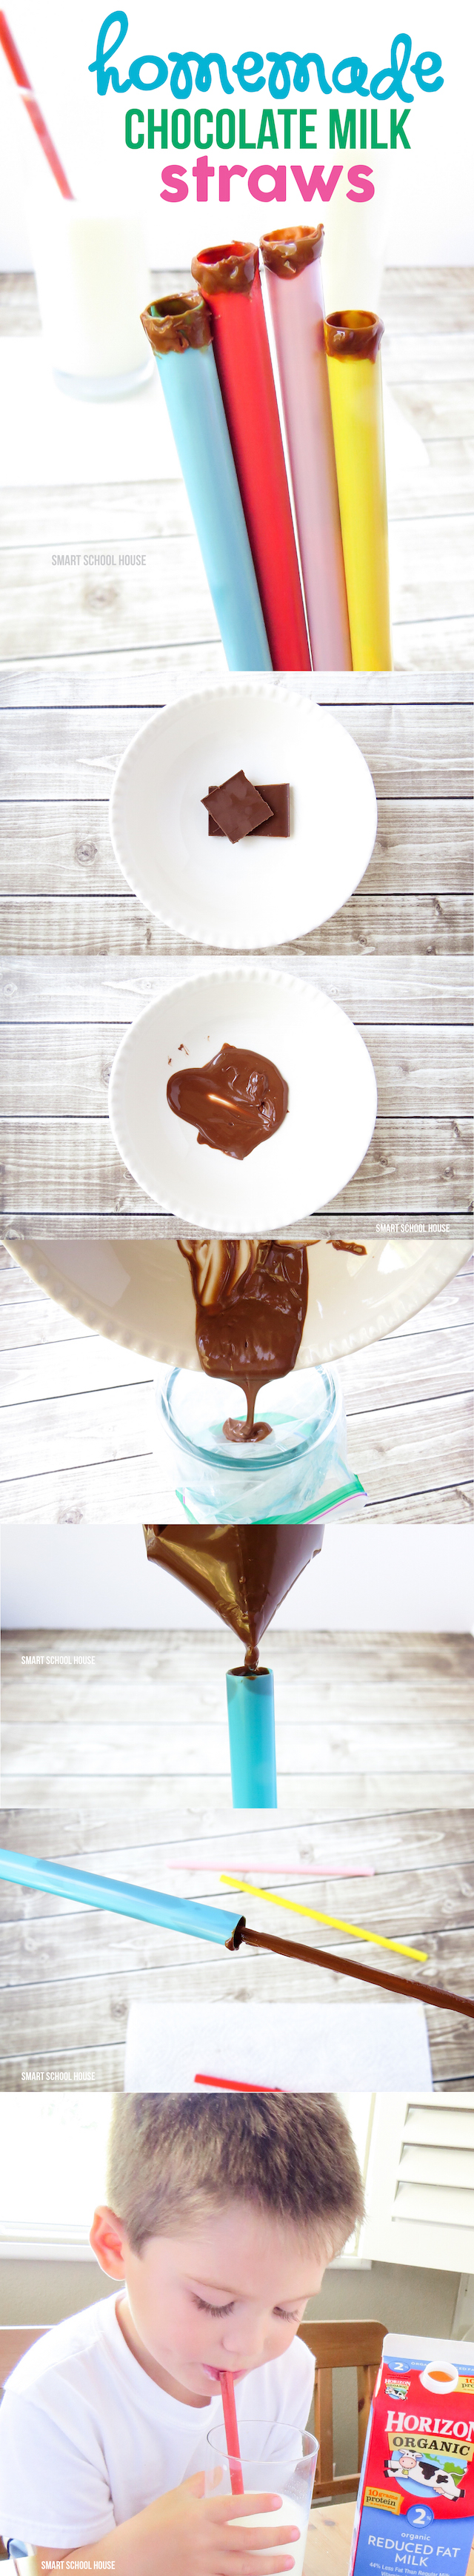 How to make Homemade Chocolate Milk Straws!